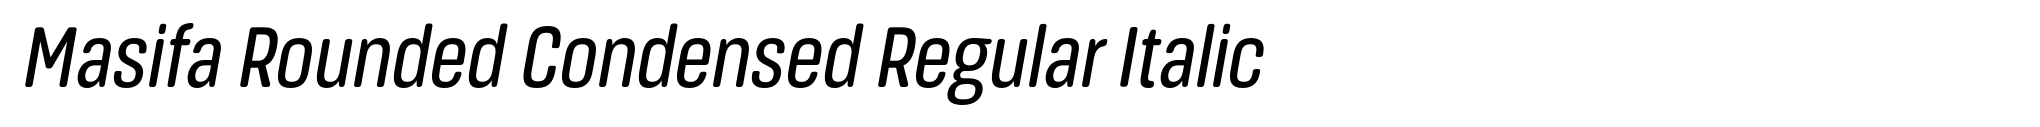 Masifa Rounded Condensed Regular Italic image